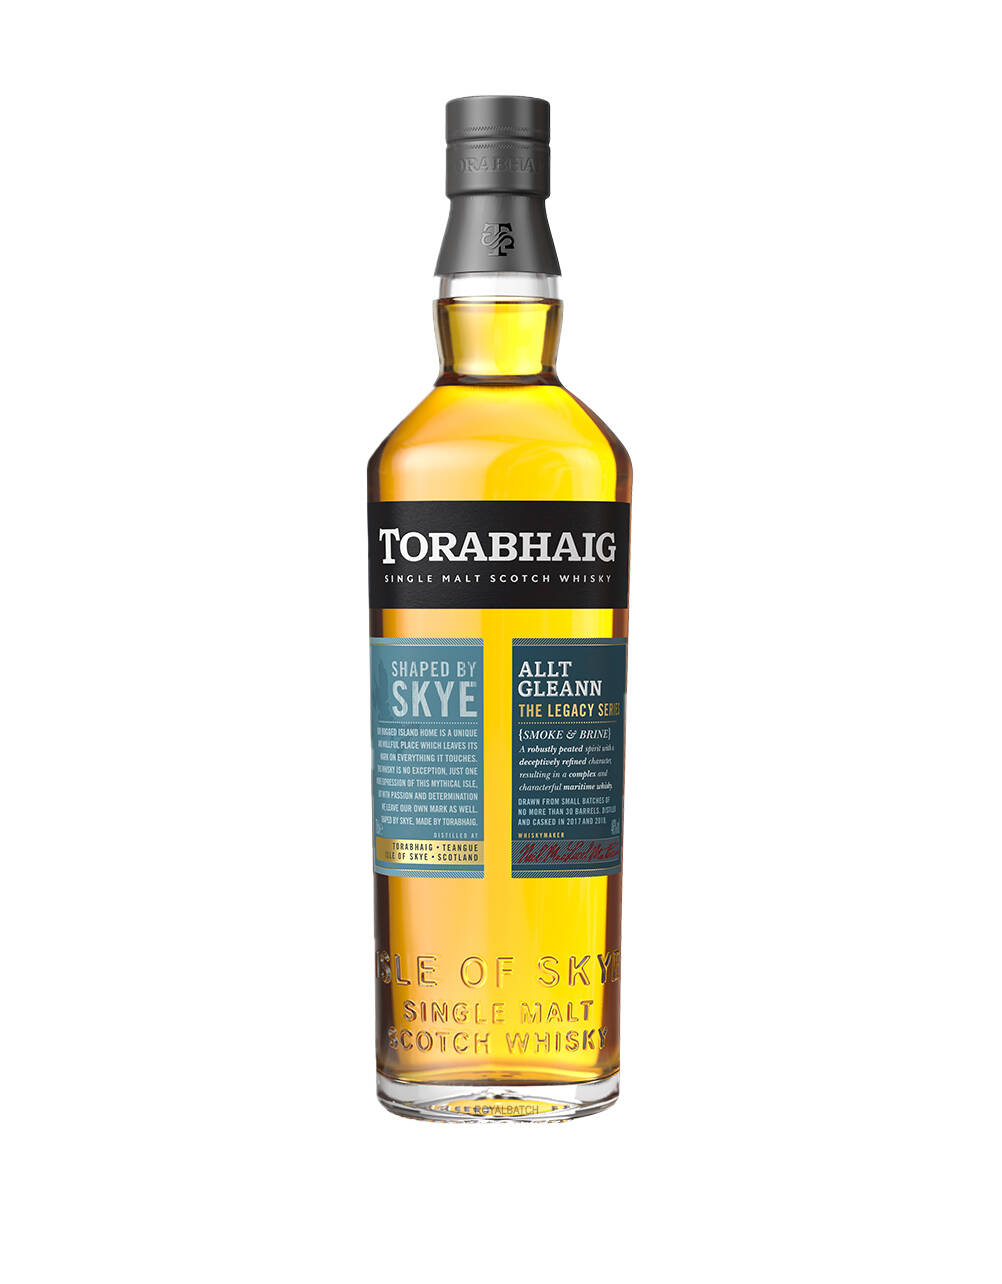 Torabhaig Allt Gleann Single Malt Scotch Whisky